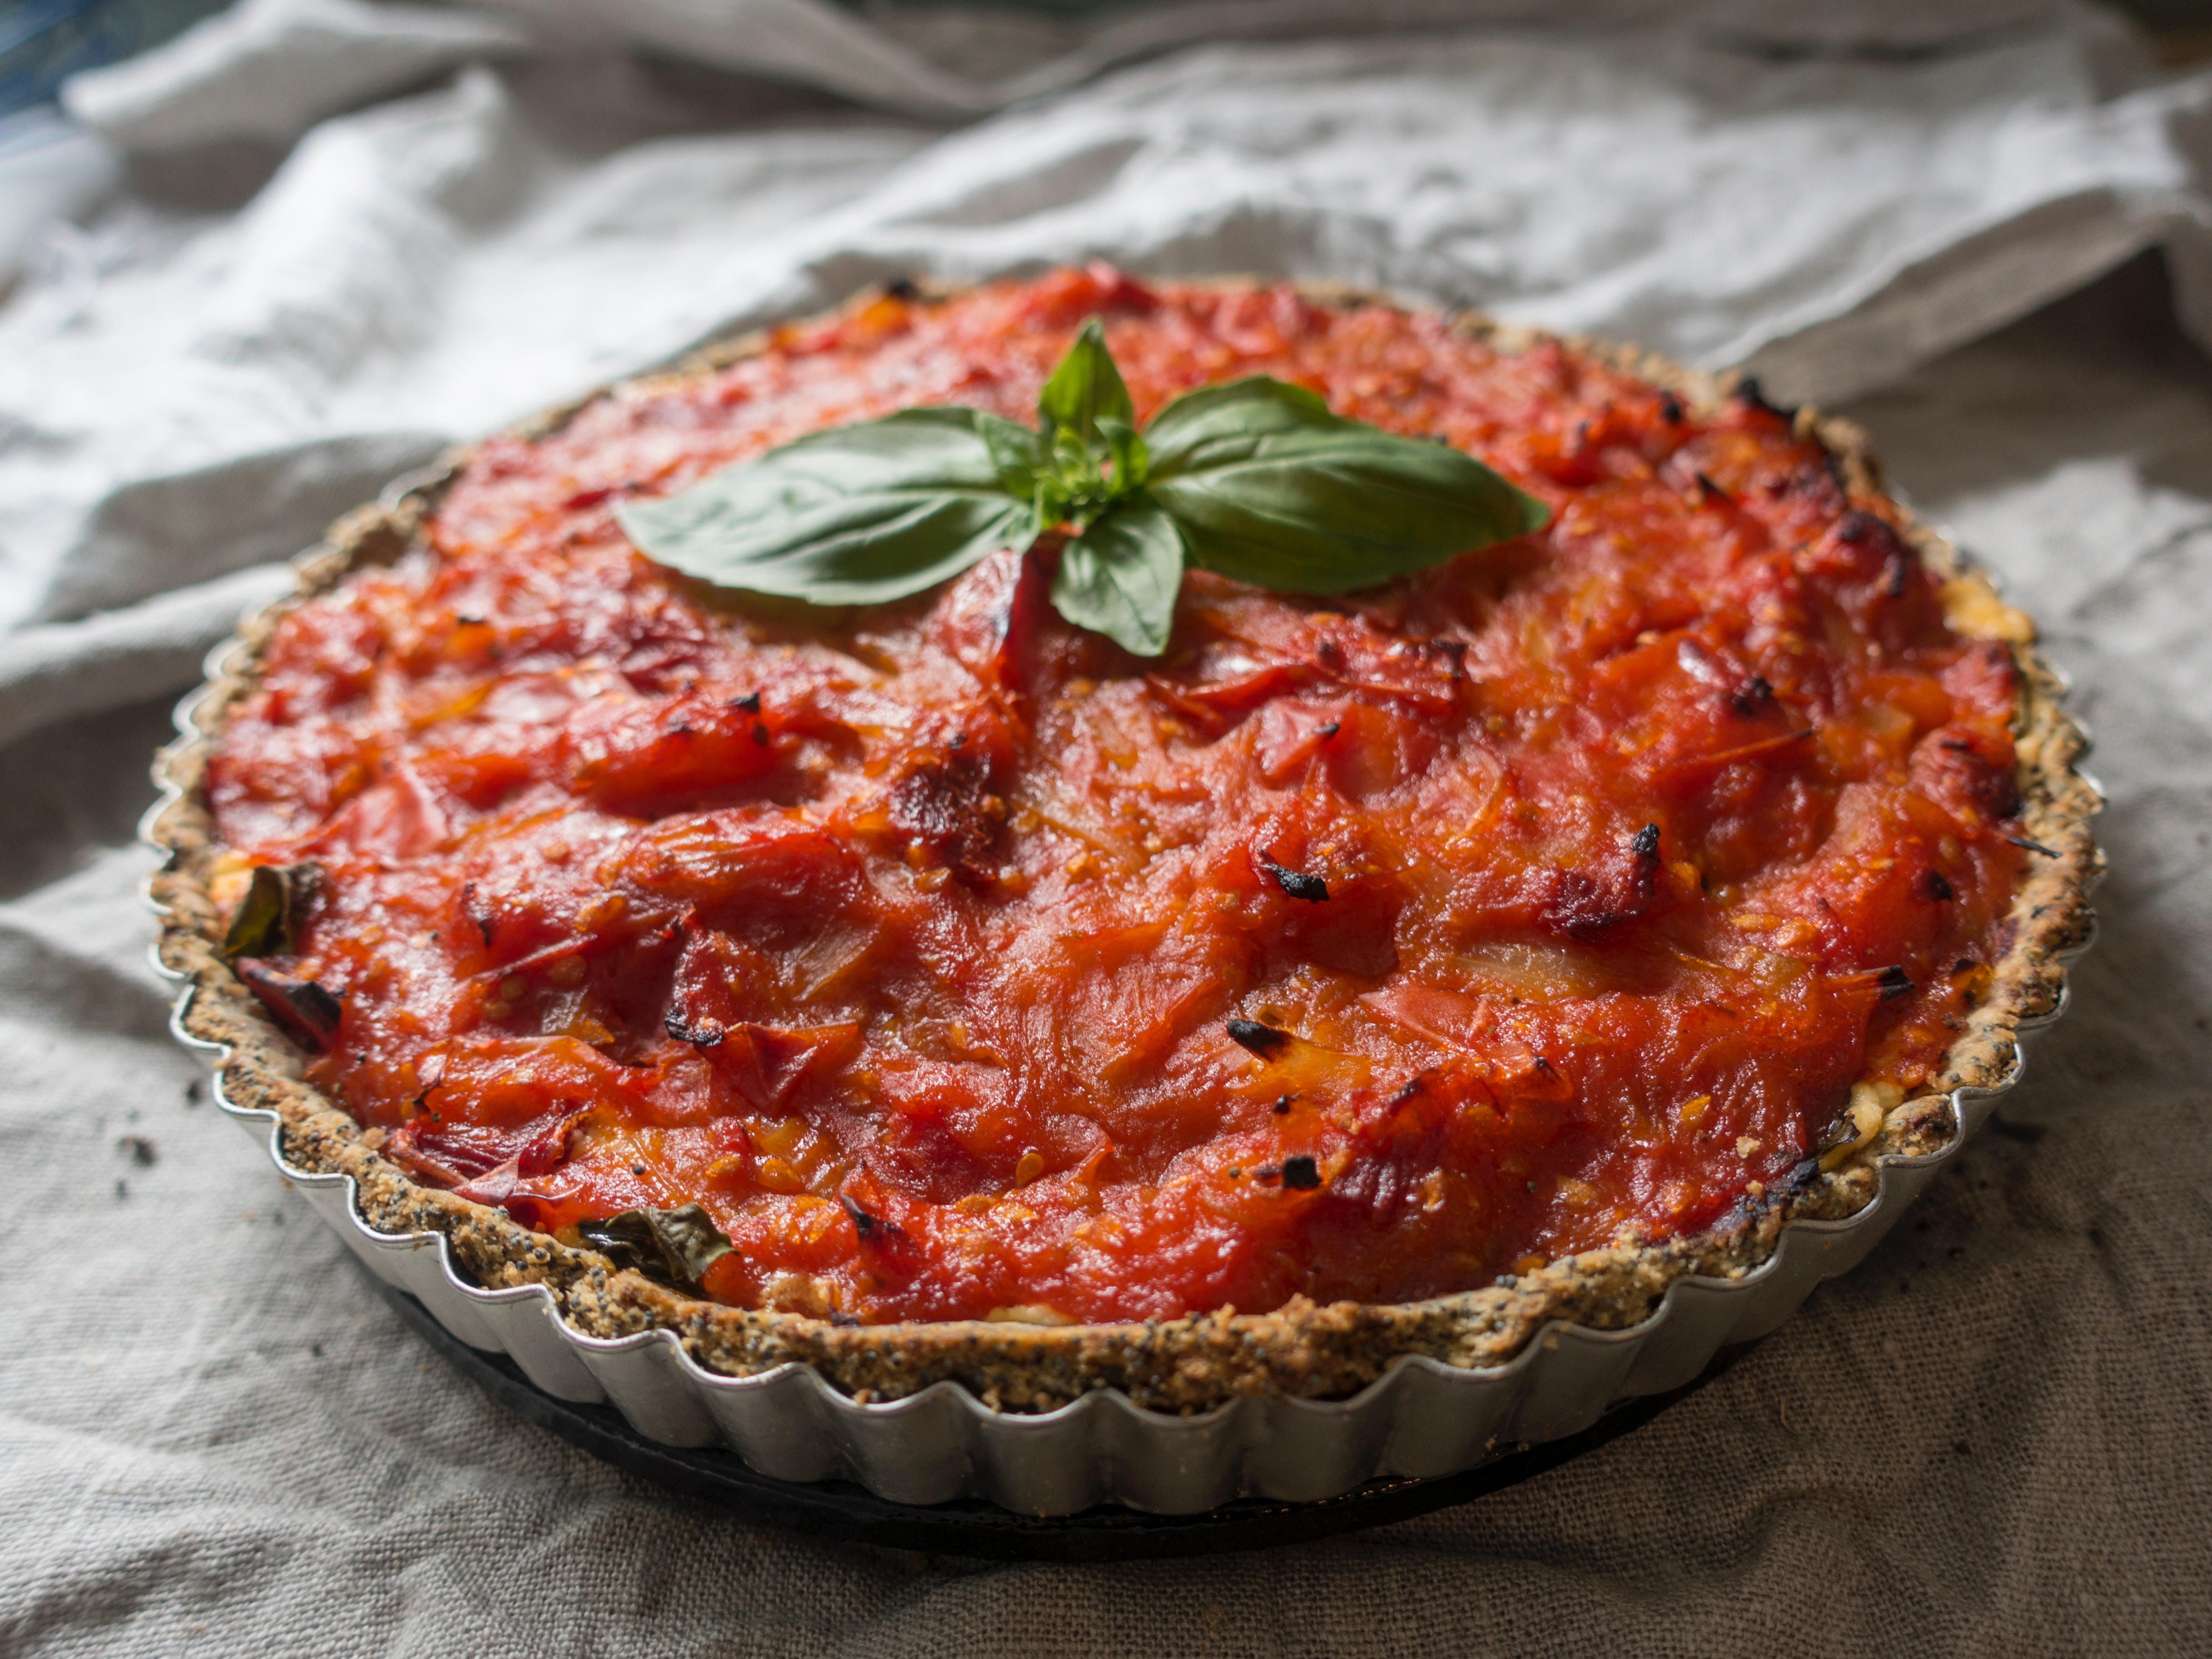 ナポリの伝統的なピザ「マリナーラ」。その歴史とレシピについて